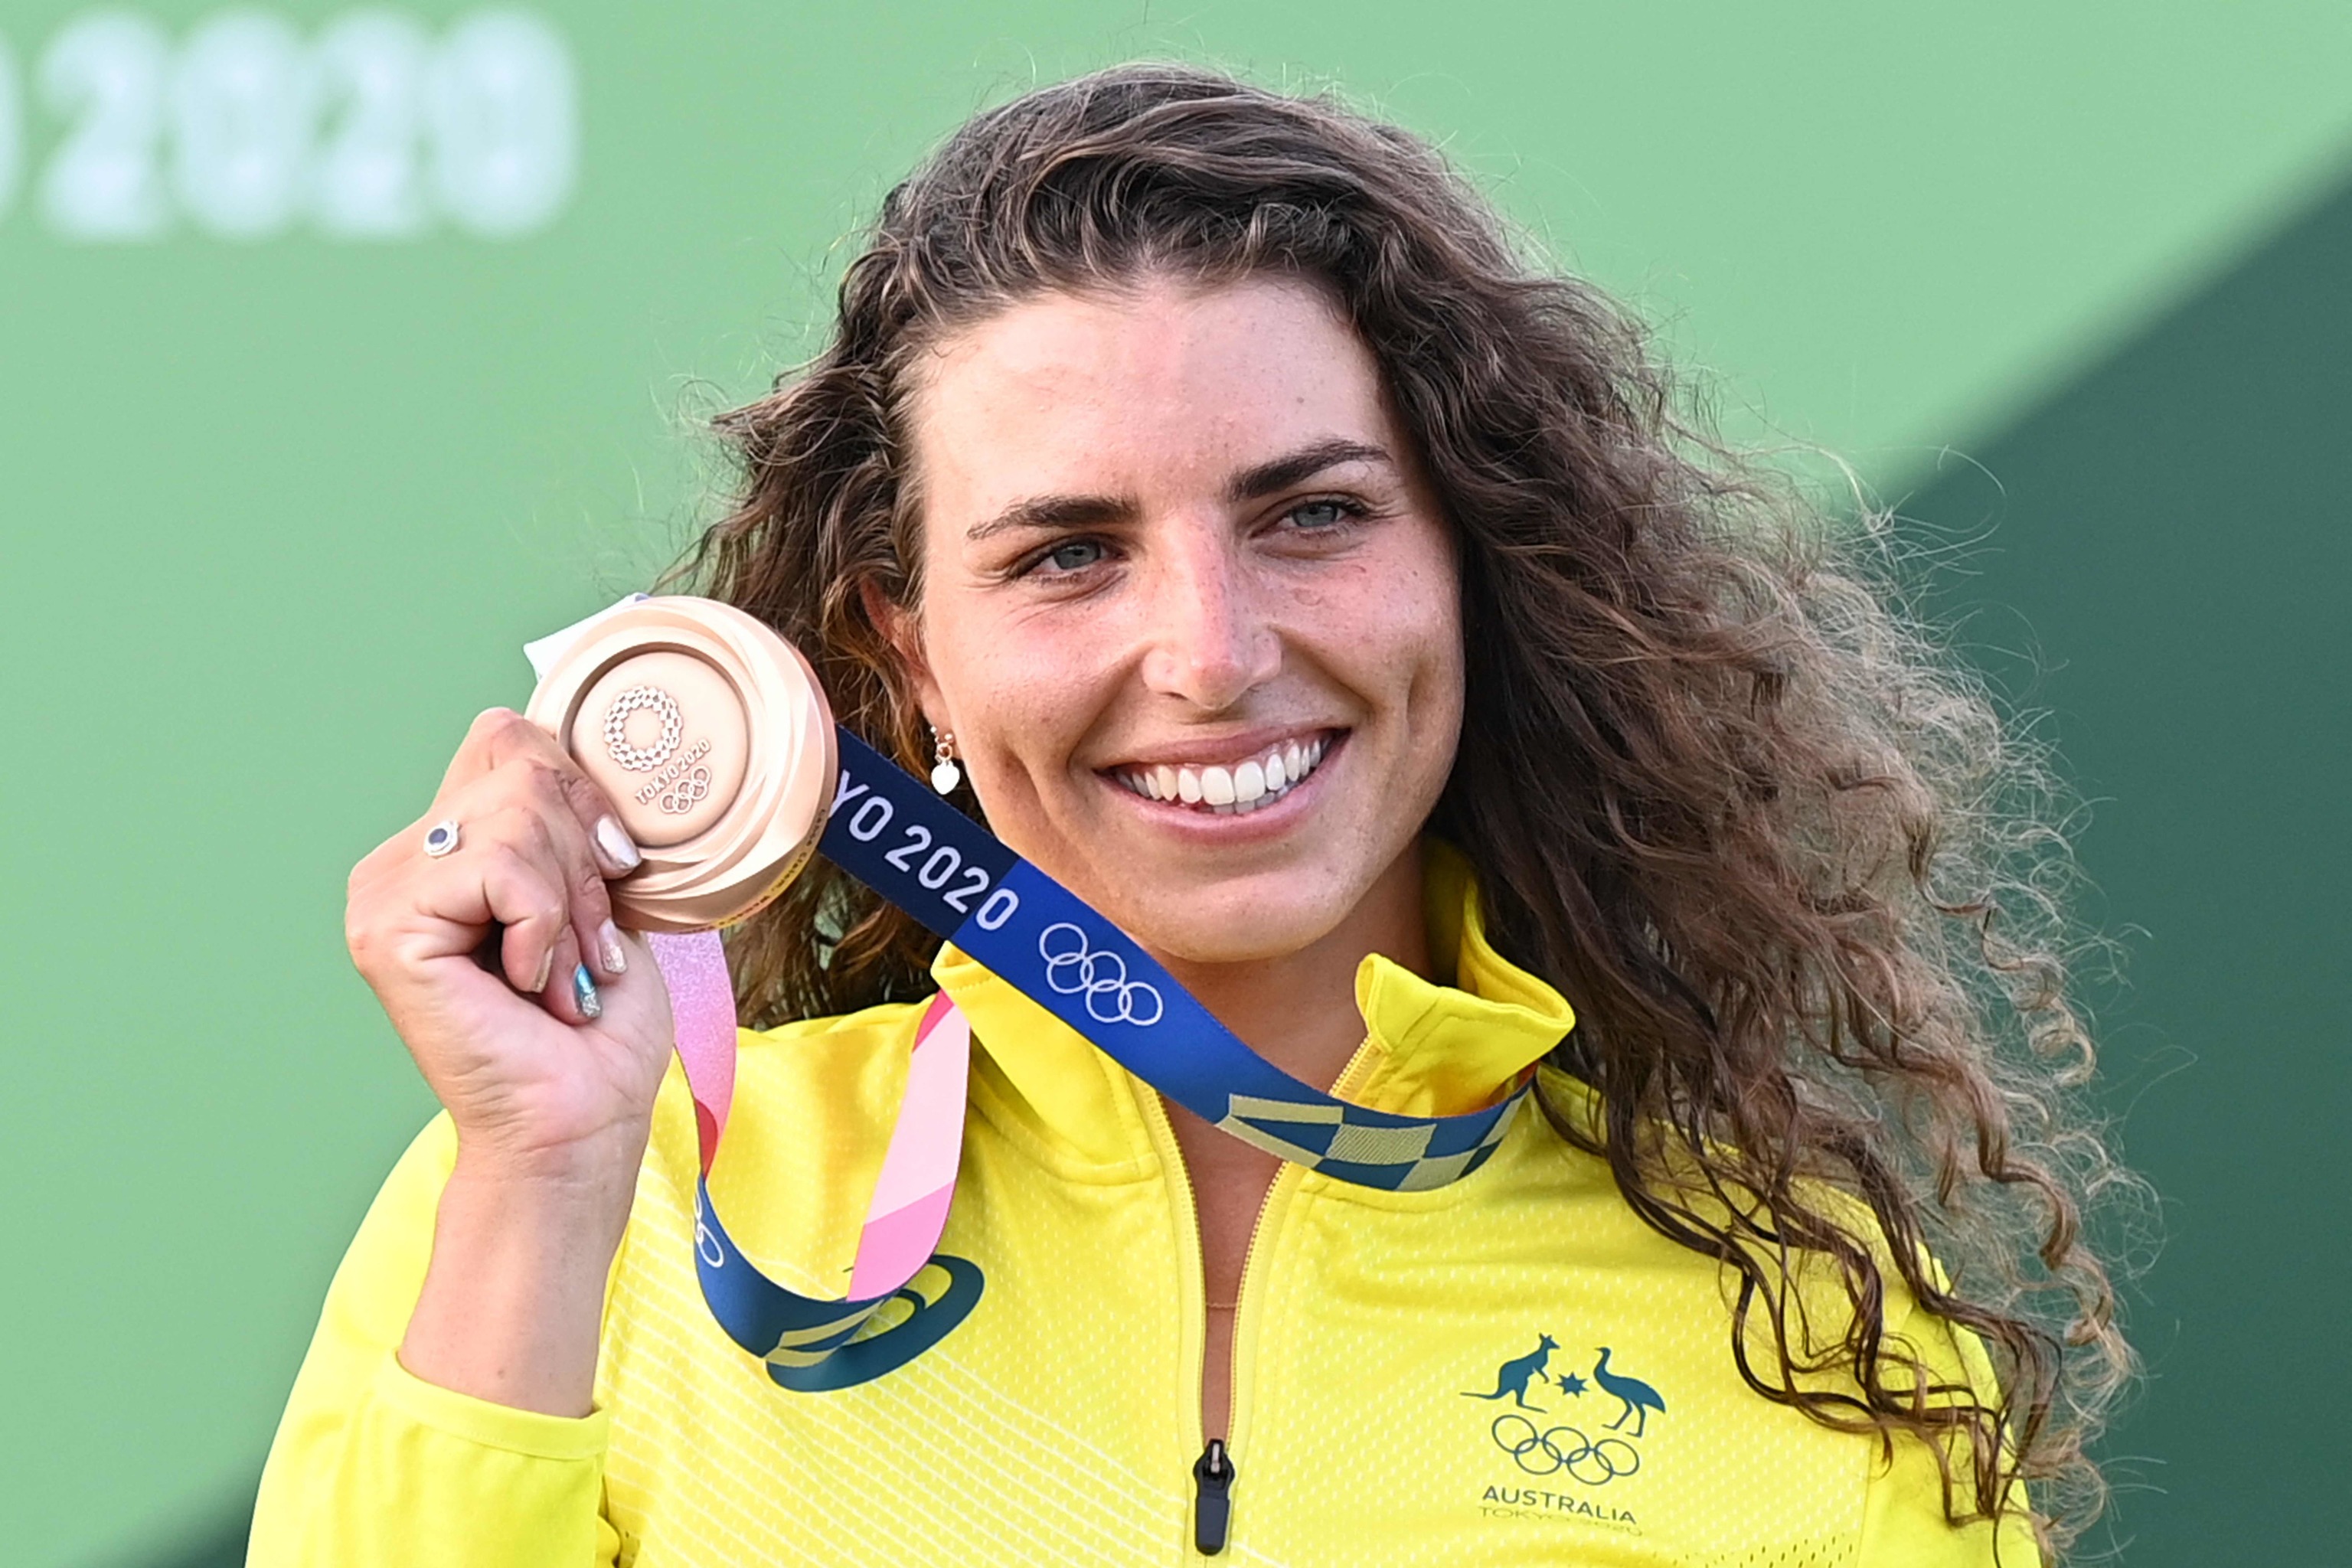 La australiana Jessica Fox posa con su medalla de bronce en el podio tras la final de Kayak femenino durante los Juegos Olmpicos de Tokio 2020.